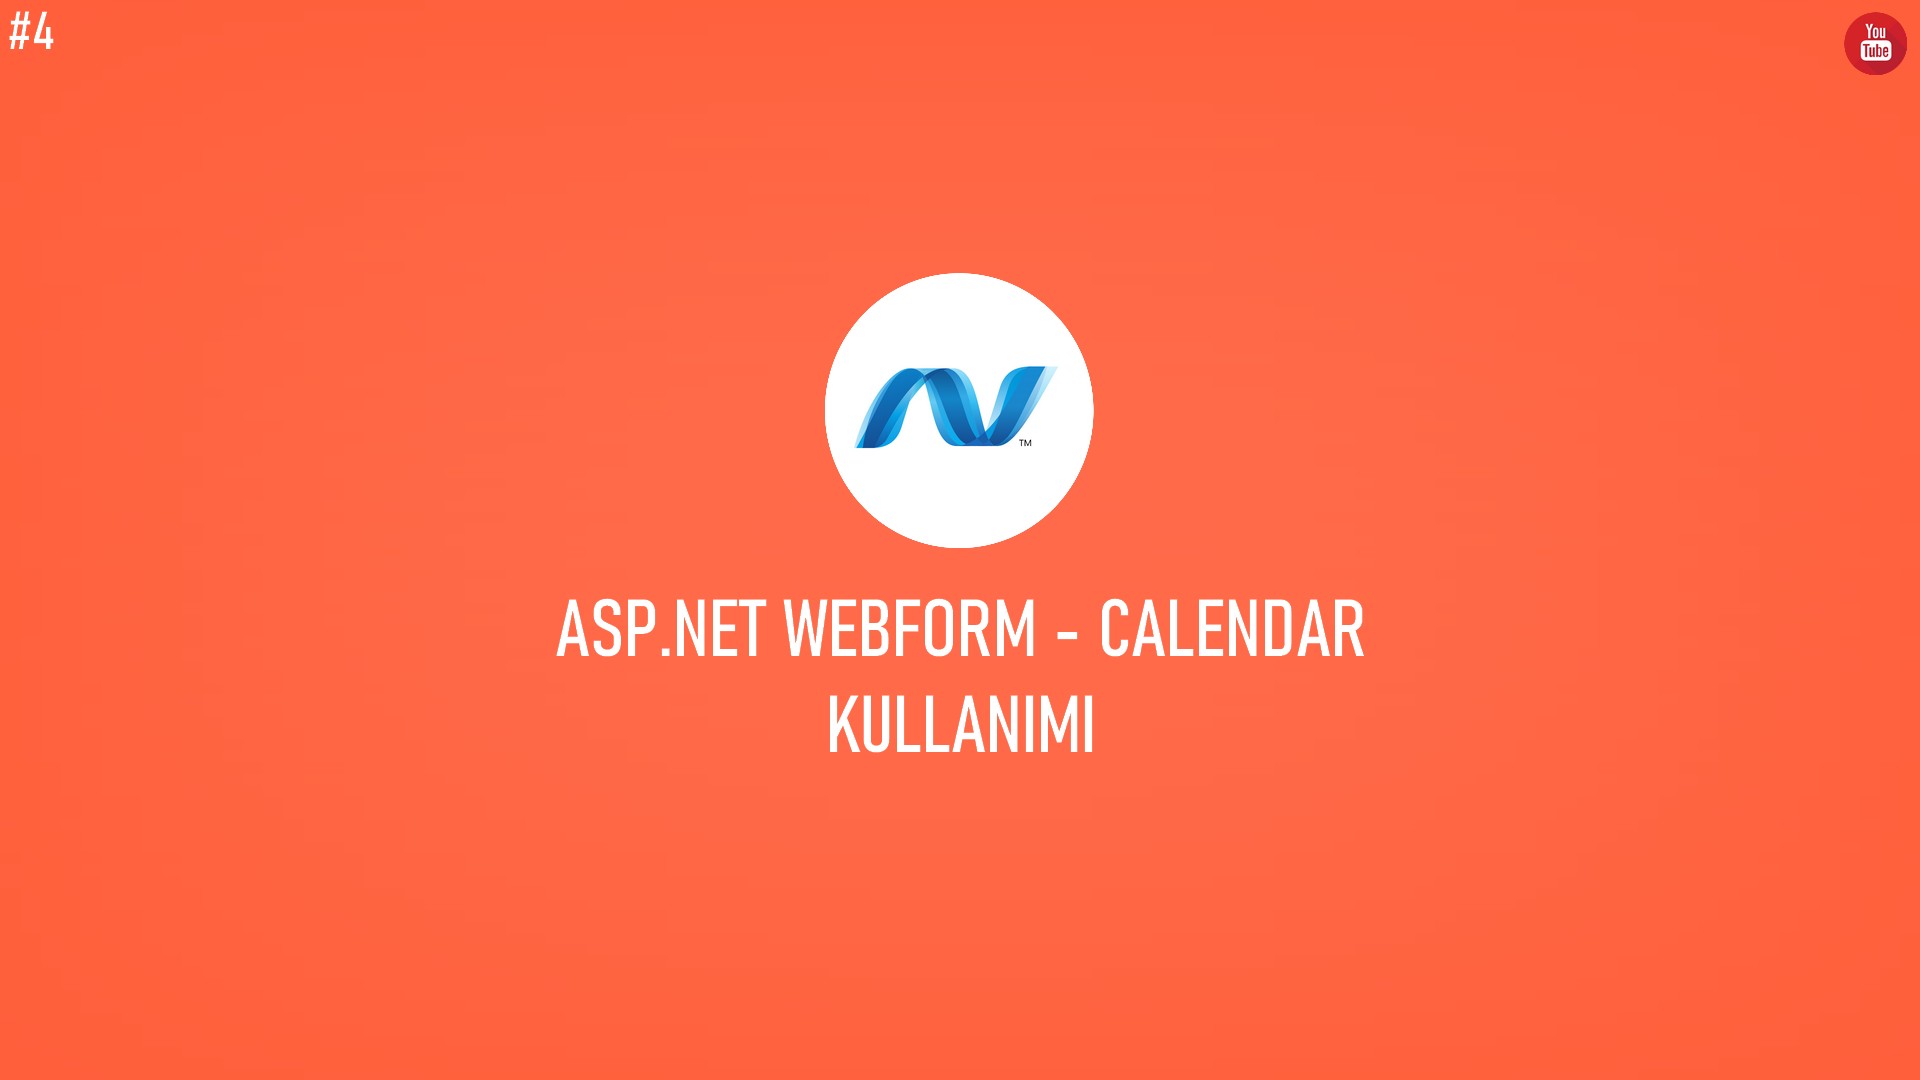 C# ASP.NET WebForm - Calendar Kullanımı başlıklı içeriğin resmi